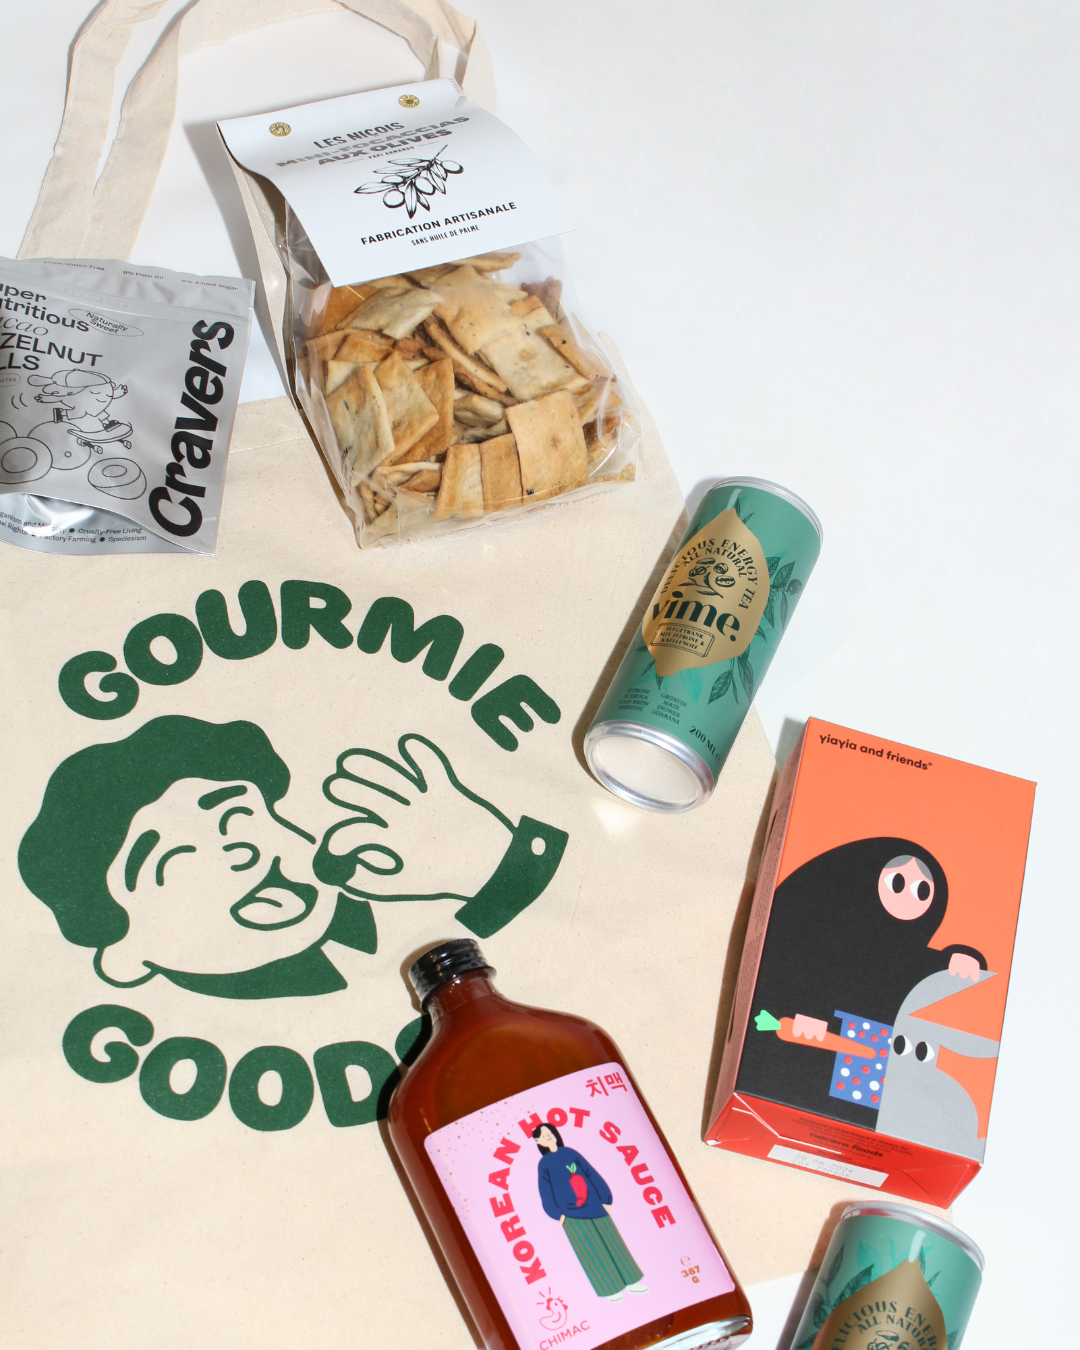 The Gourmie Goods Box